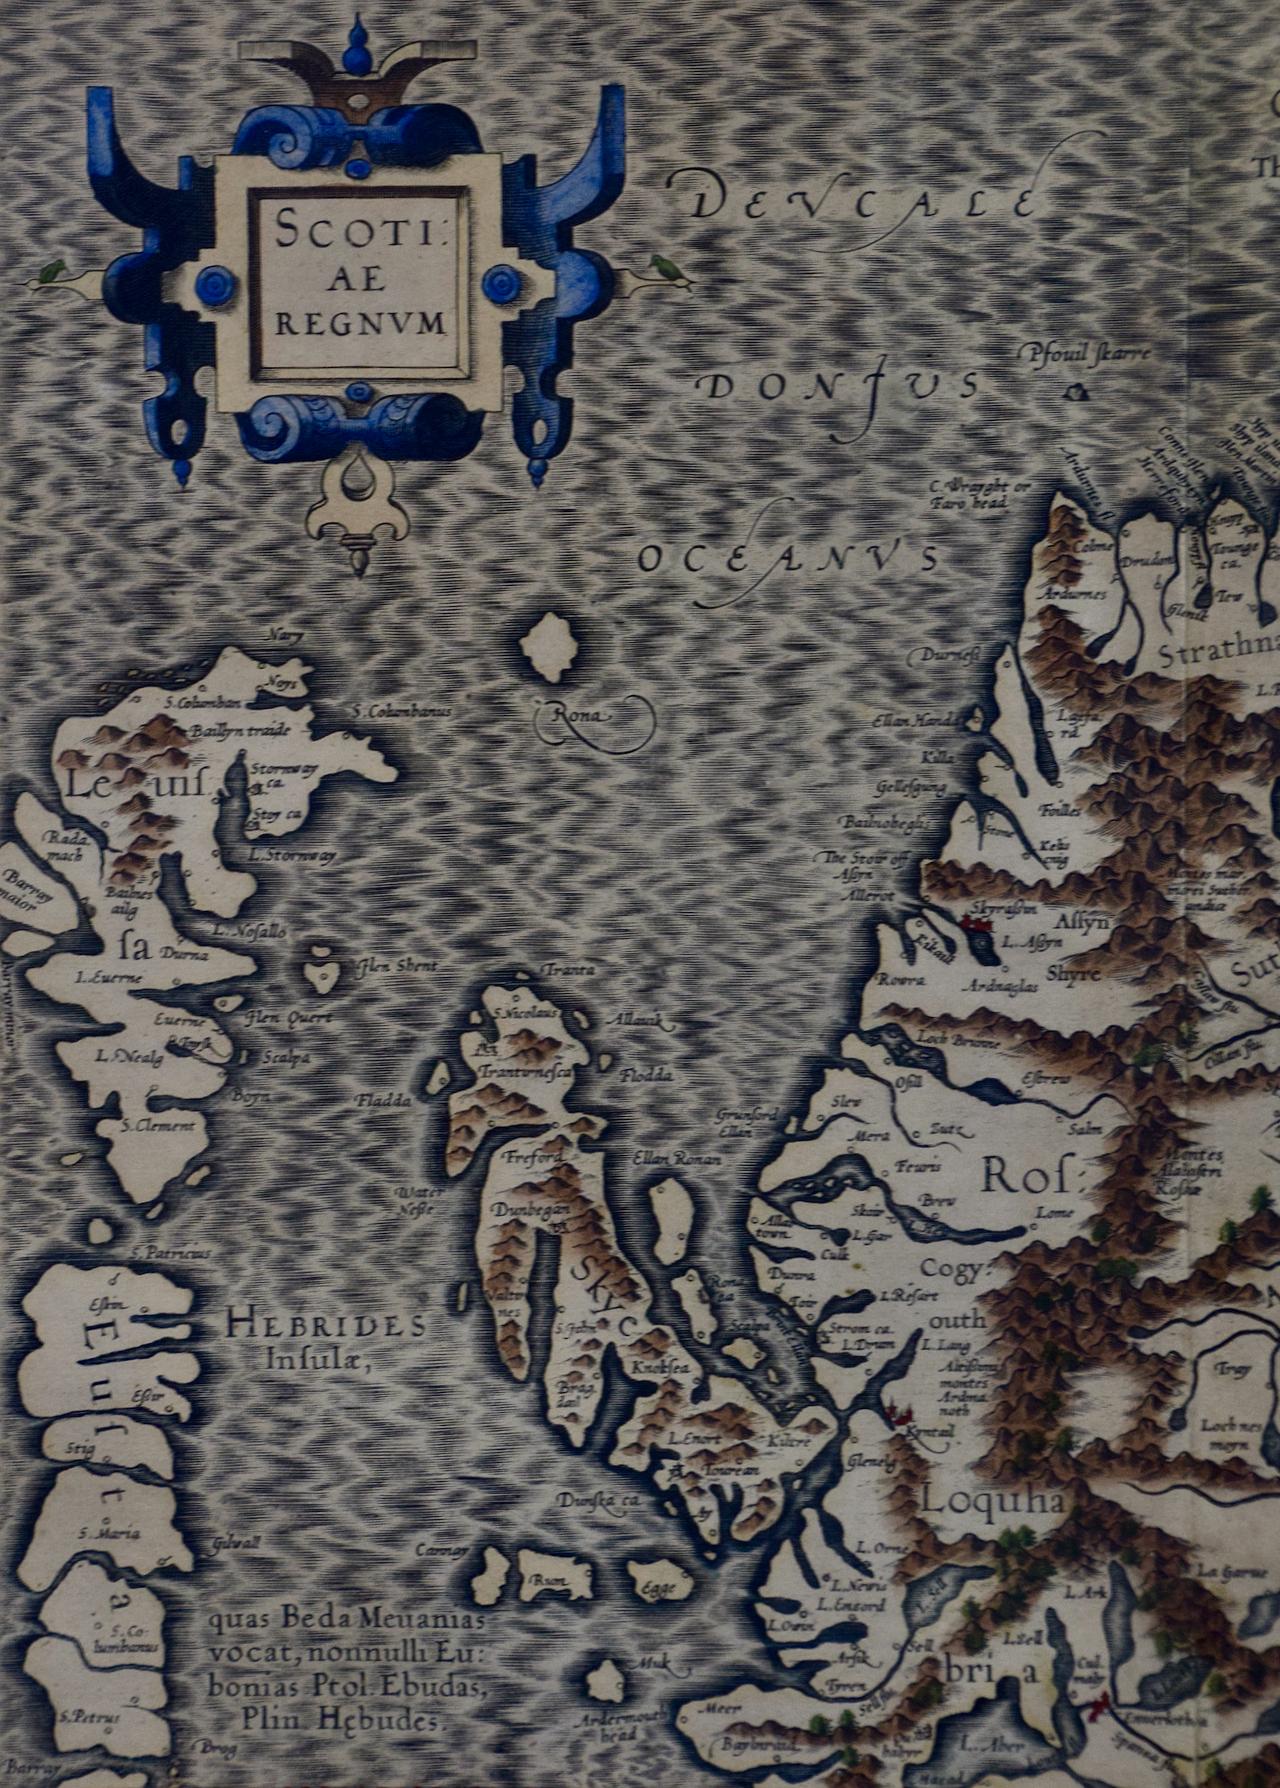  Carte du nord de l'Écosse du XVIe siècle, encadrée et coloriée à la main par Gerard Mercator, intitulée 